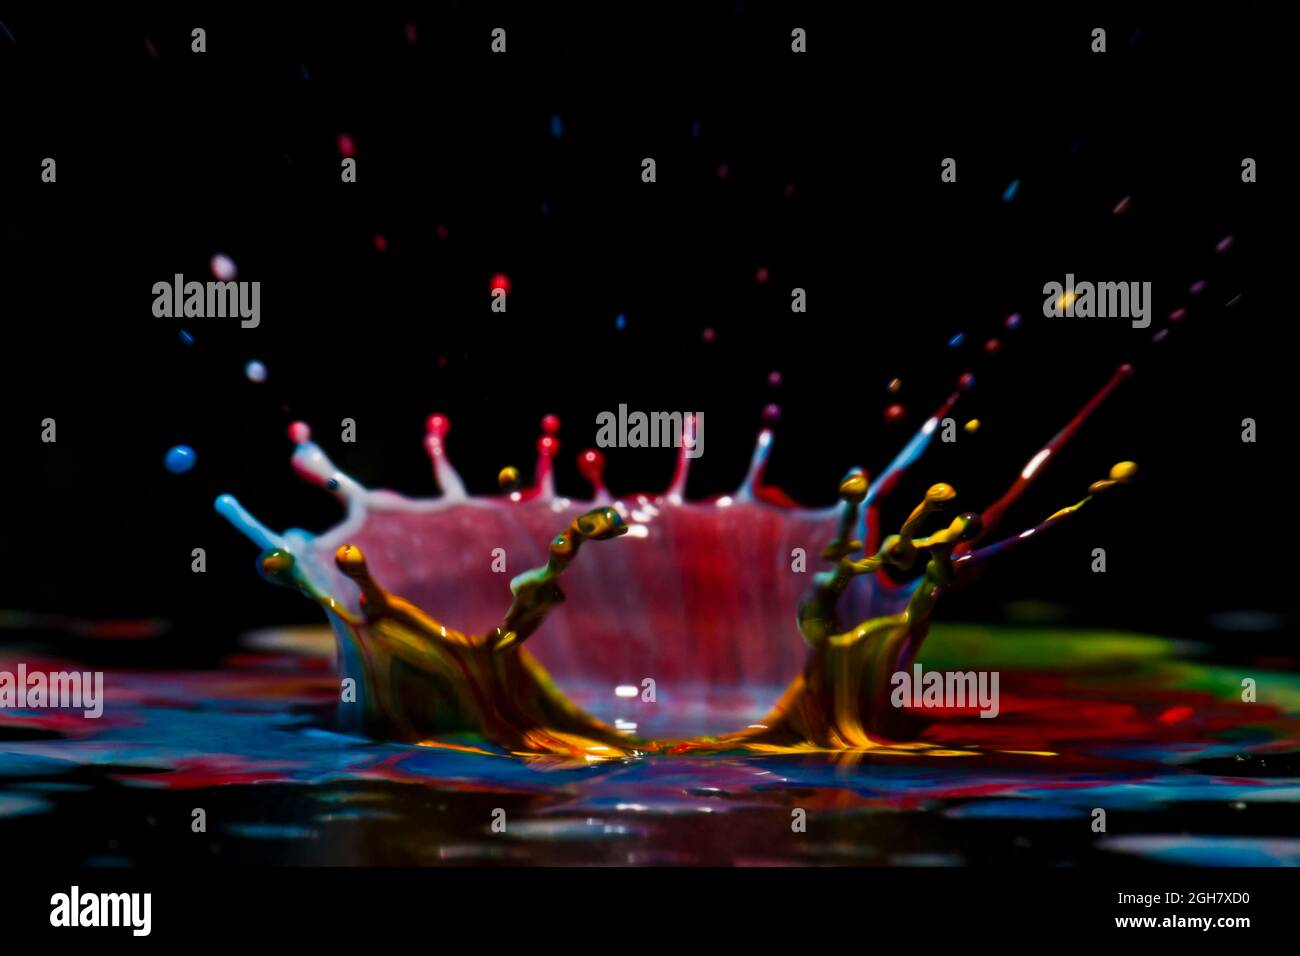 Foto flash ad alta velocità di una goccia di liquido colorata. La gocciolina viene a cadere nel liquido e produce una corona multicolore. Foto Stock